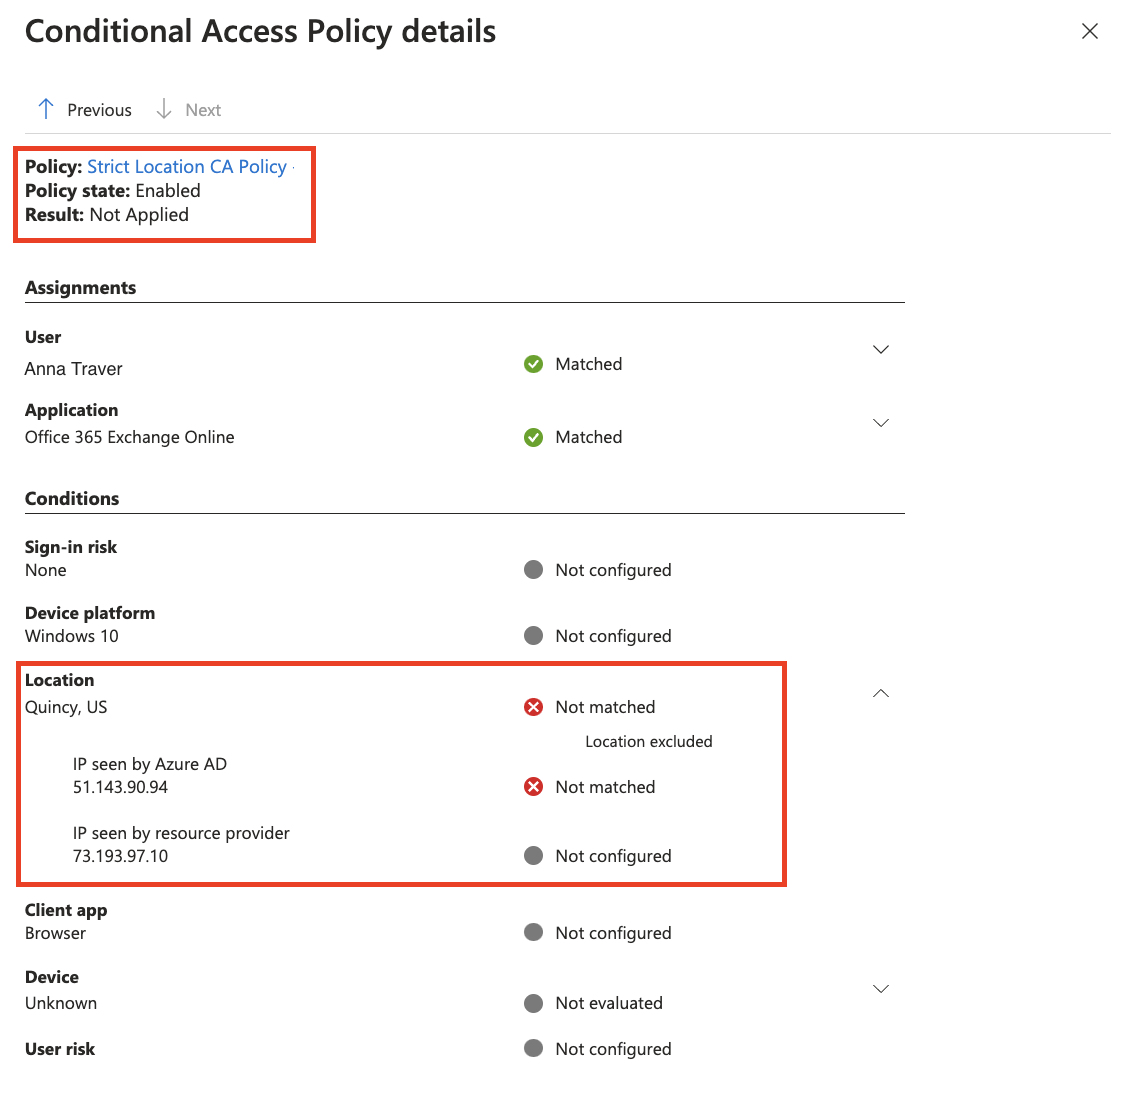 Képernyőkép arról, hogy a feltételes hozzáférési szabályzat nem lett alkalmazva, mert a hely ki van zárva.